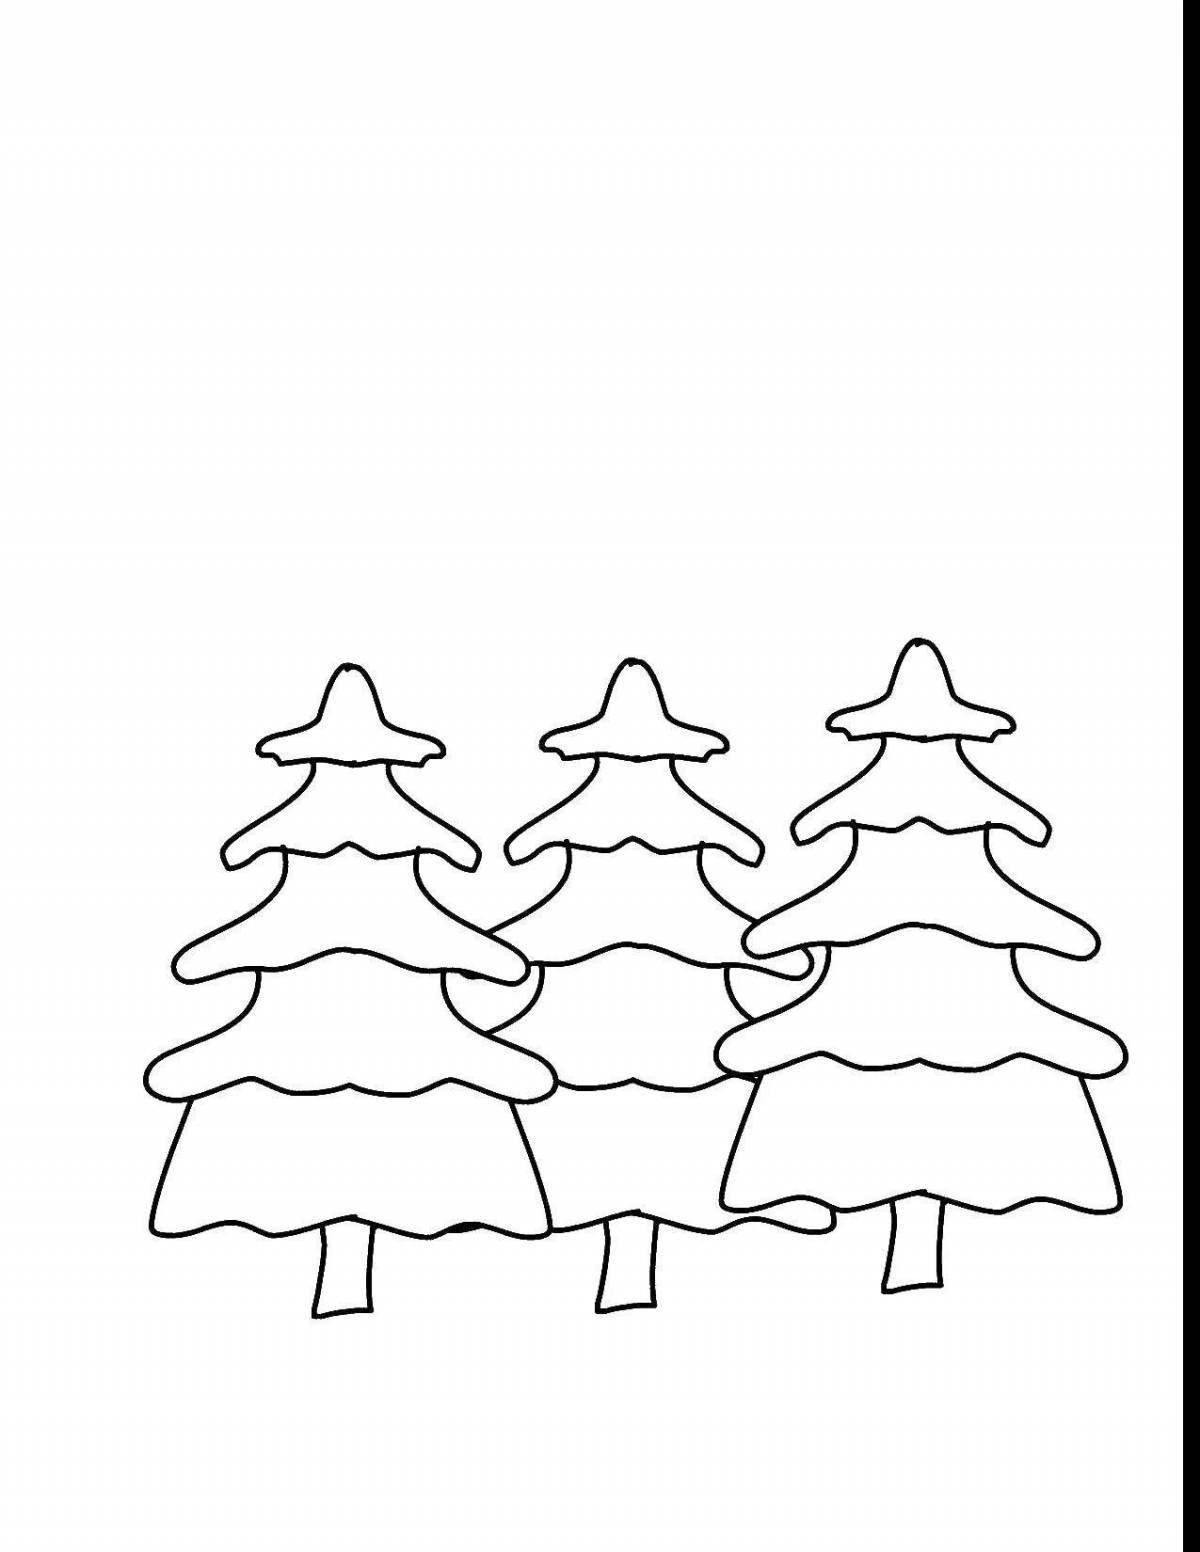 Великолепная раскраска рождественская елка зимой